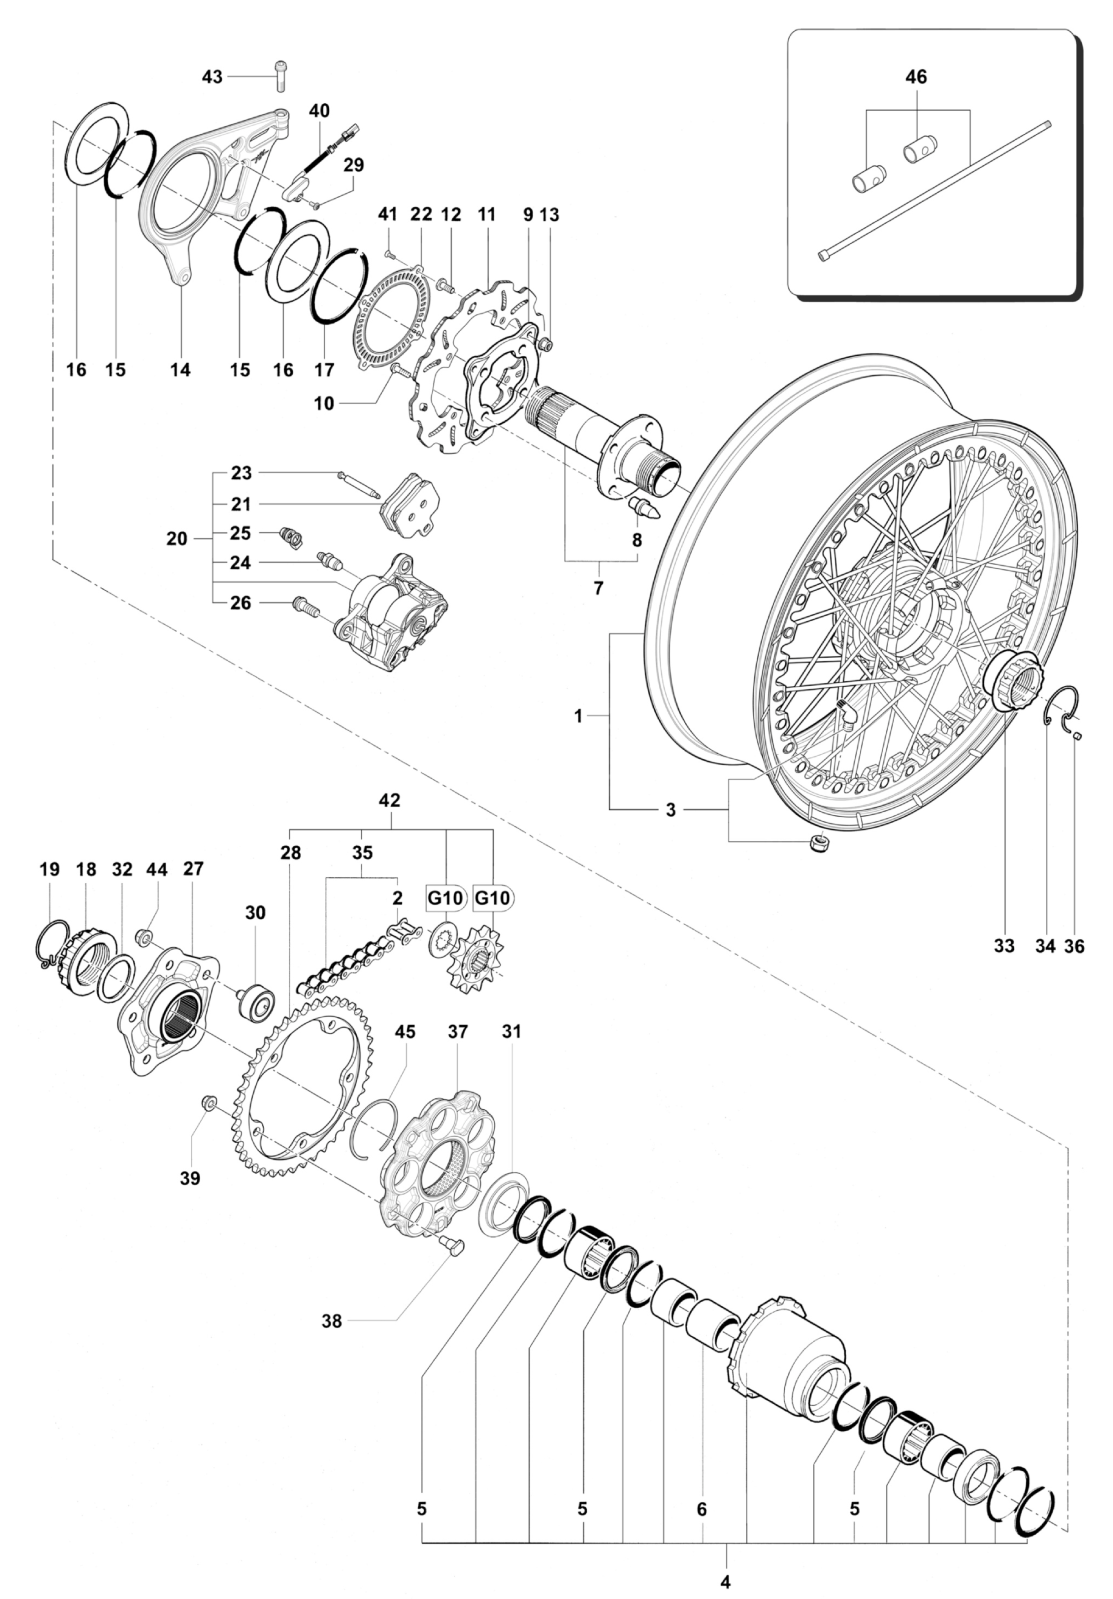 Rear Wheel Assembly


